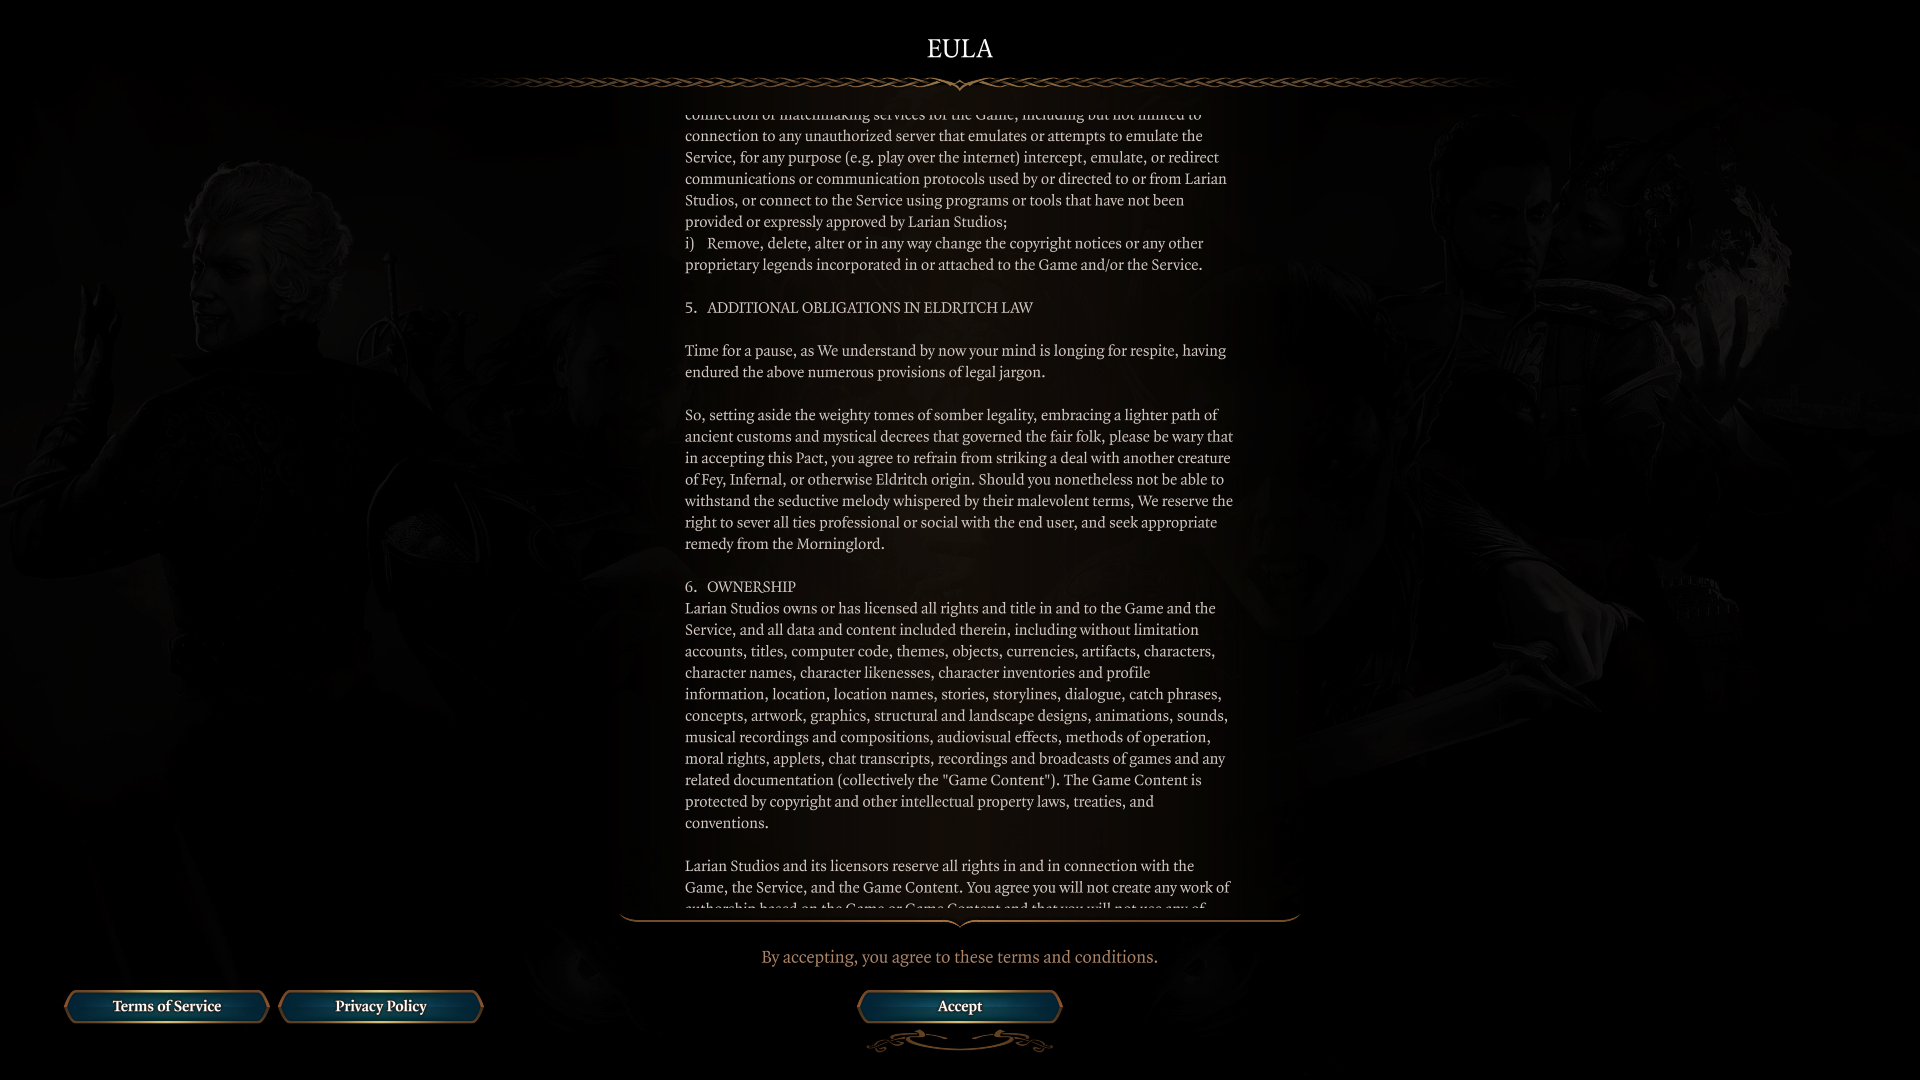 Ein Screenshot der EULA-Vereinbarung von Larian Studios für Baldur's Gate 3